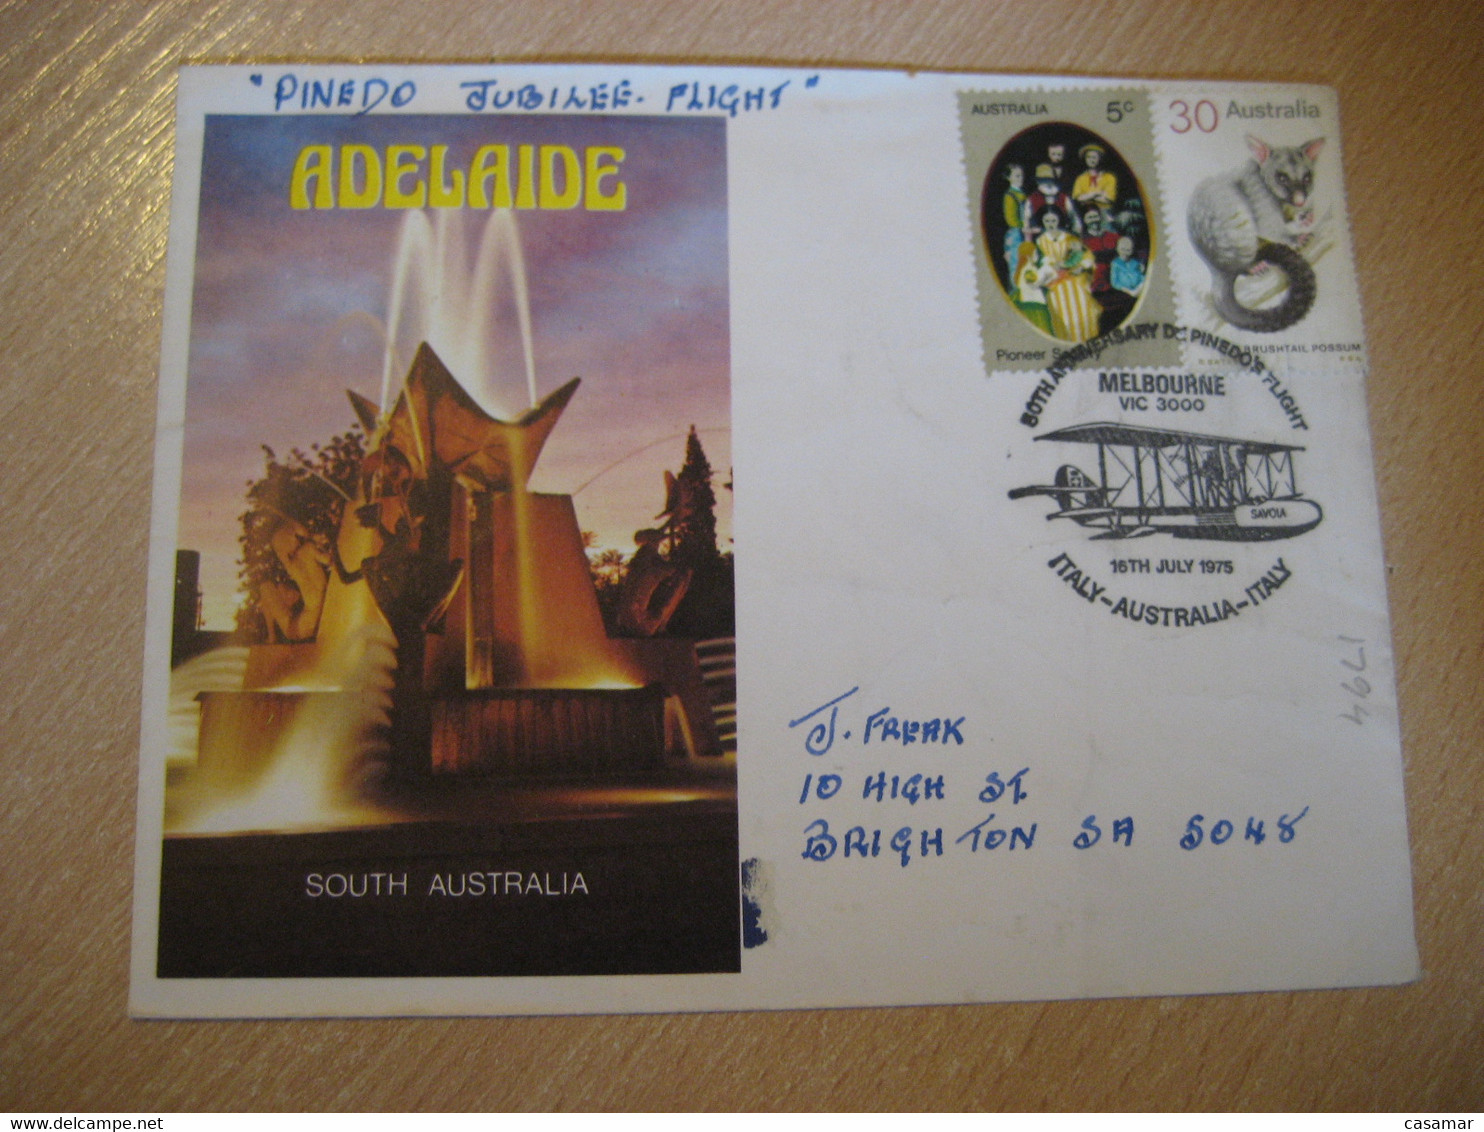 ITALY Fiumicino Airport AUSTRALIA 50th Anniv. Pinedo Flight Samoa Plane 1975 Cancel Adelaide Cover AUSTRALIA - Premiers Vols